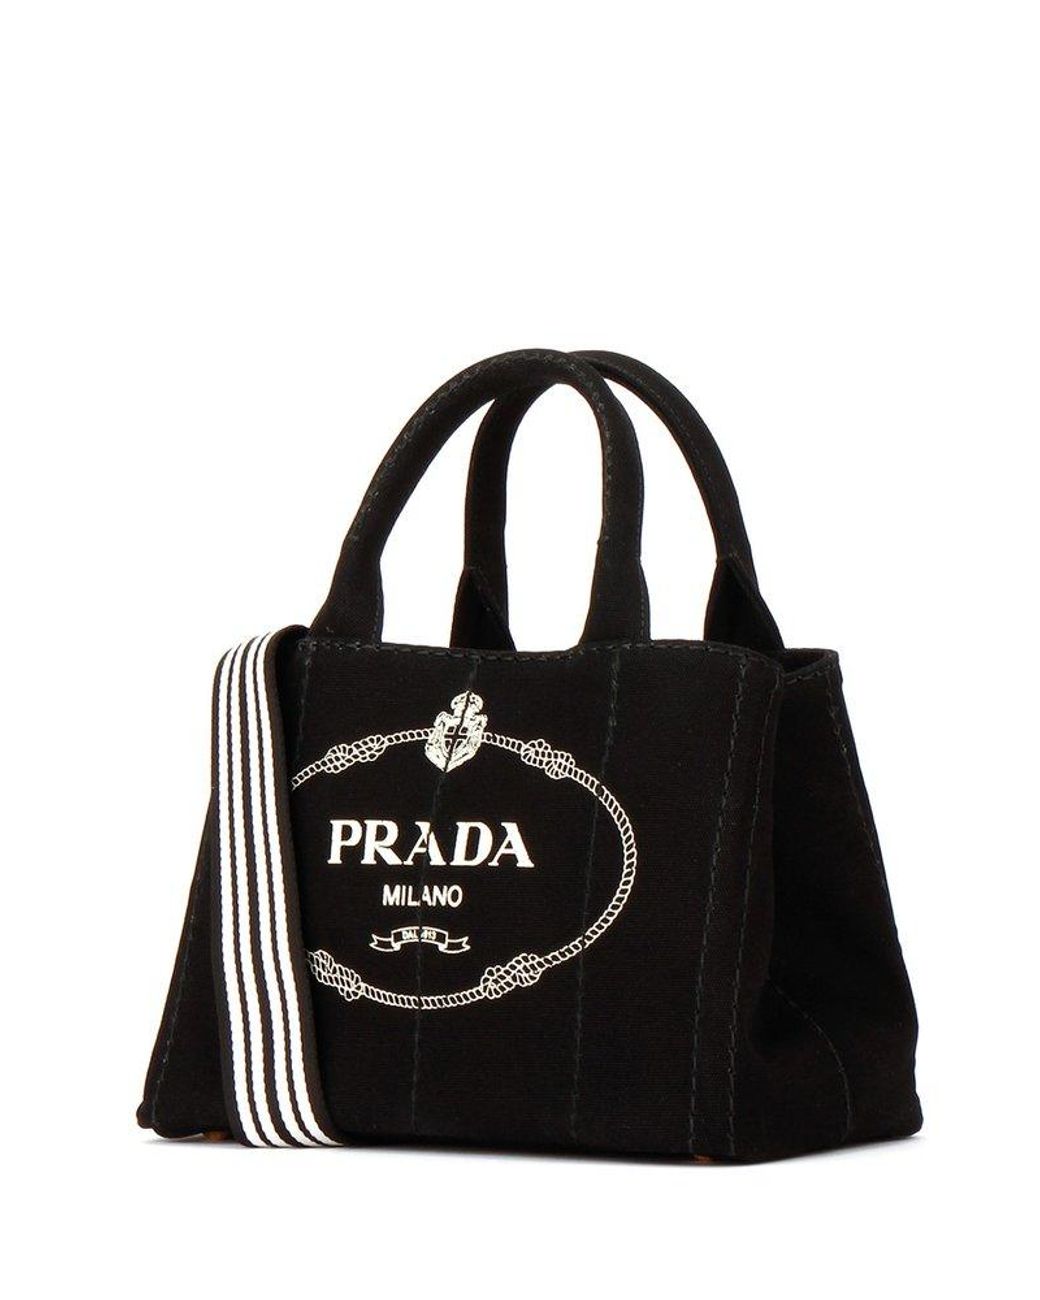 Prada Logo Printed Tote Bag in Black | Lyst